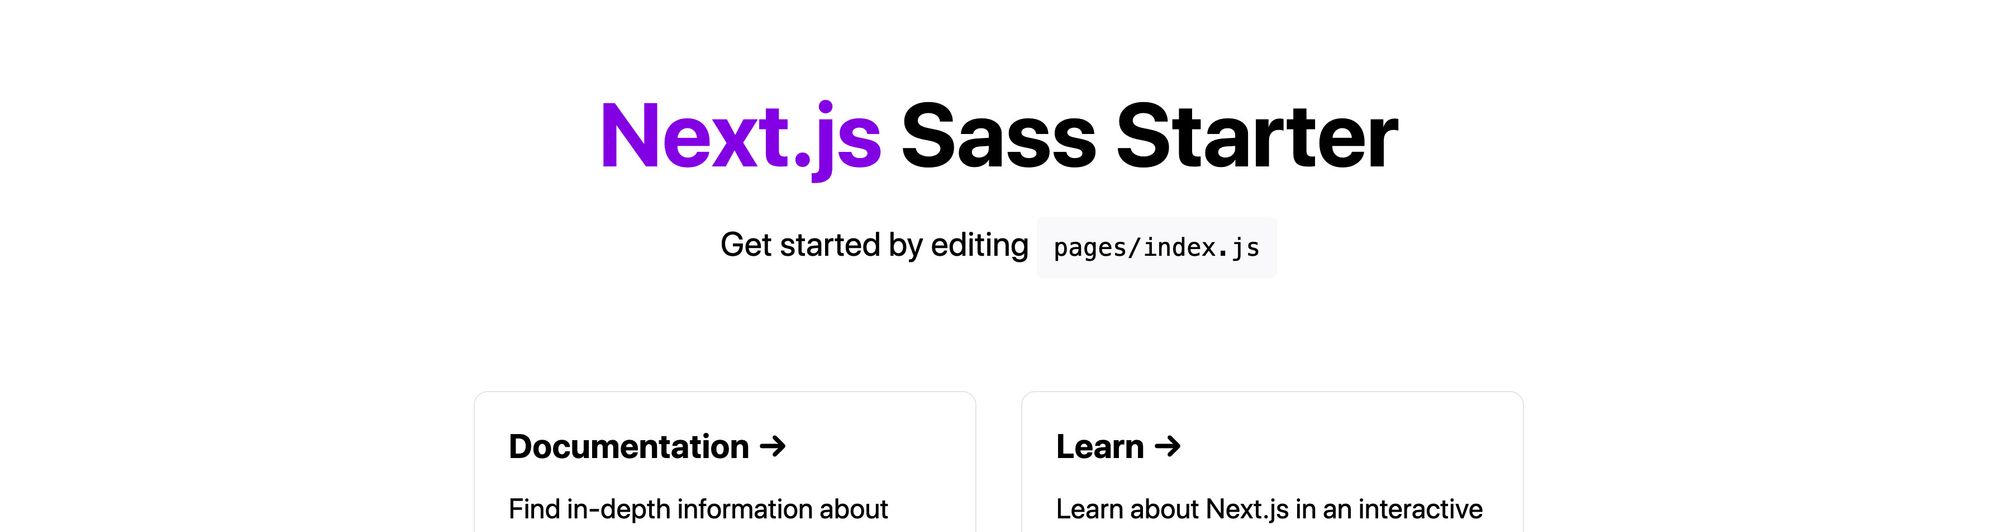 Обновлен заголовок в приложении Next.js